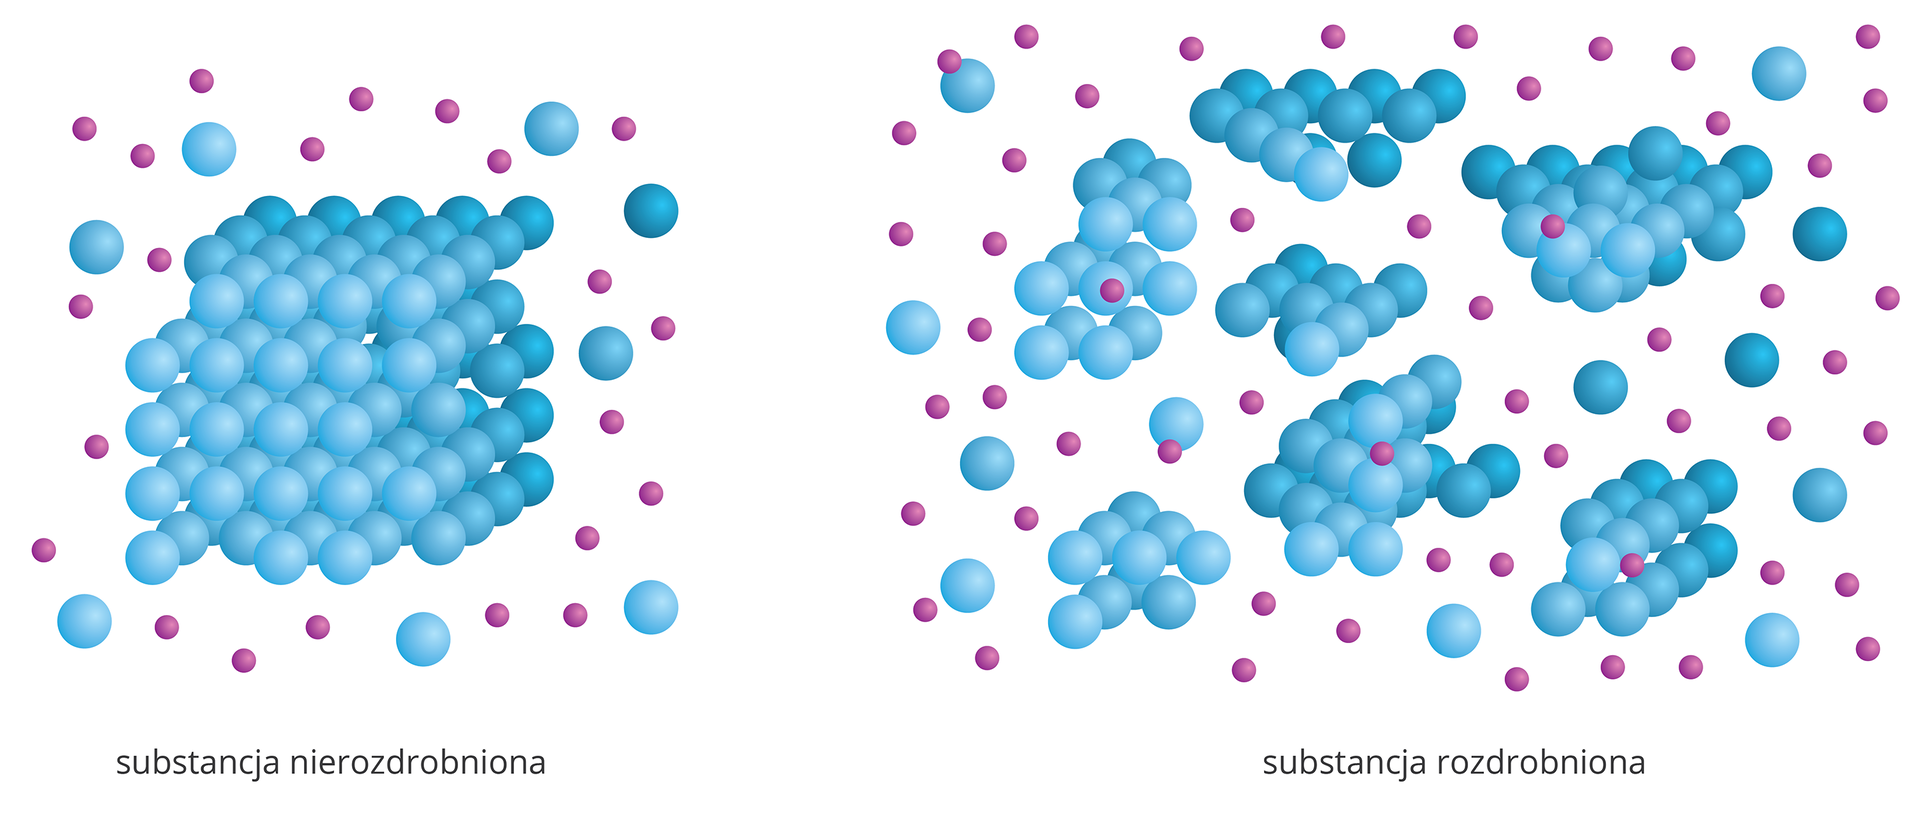 Ilustracja składa się z dwóch rysunków przedstawiających schematycznie proces rozpuszczania substancji w zależności od stopnia rozdrobnienia. Na rysunku z lewej strony rozpuszczana jest substancja nierozdrobniona. Pojedynczy blok złożony z dużych niebieskich kulek otoczony jest przez fioletowe kulki symbolizujące cząsteczki rozpuszczalnika. Od bloku sporadycznie odrywają się cząstki i grupy cząstek, ale w samym rozpuszczalniku unosi się ich niewiele. Na rysunku z prawej strony rozpuszczana jest substancja rozdrobniona na mniejsze kawałki. Wokół niewielkich skupisk cząsteczek w rozpuszczalniku unosi się sporo pojedynczych cząsteczek już rozpuszczonych.